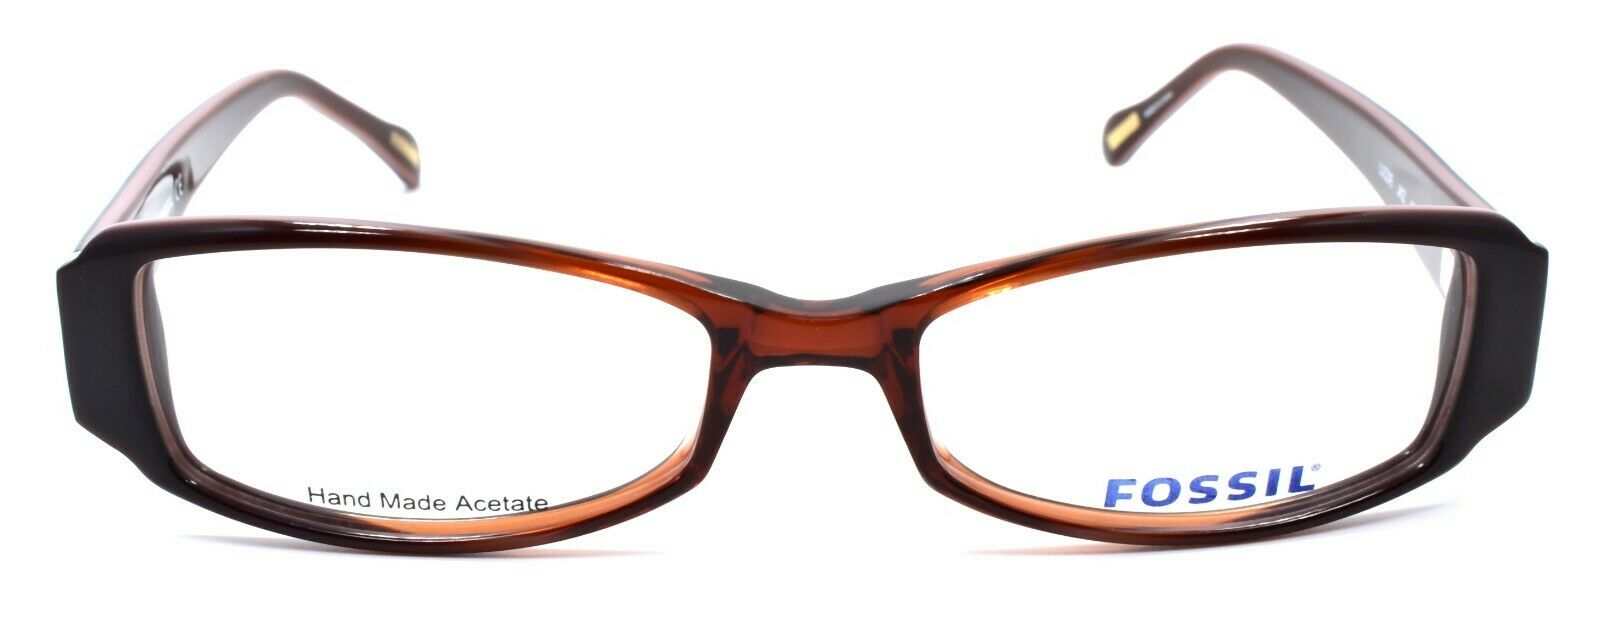 2-Fossil Lizzie JKZ Women's Eyeglasses Frames 51-17-135 Brown Fade-716737238080-IKSpecs